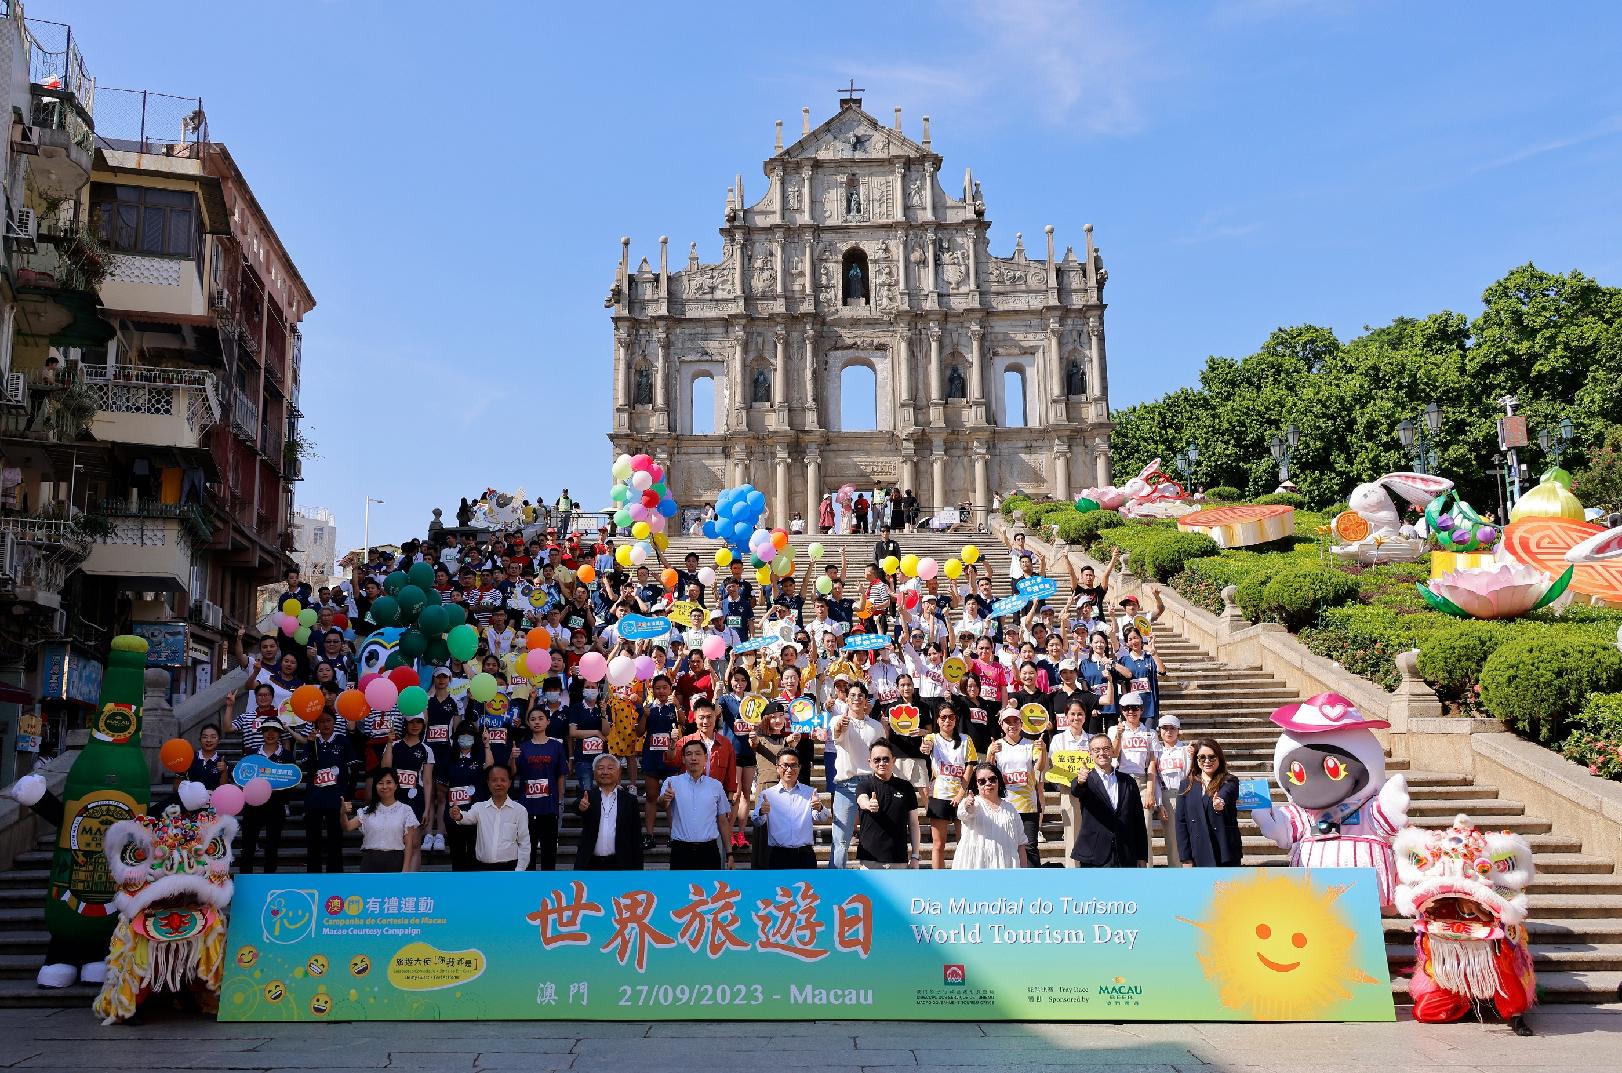 Celebração do Dia Mundial do Turismo: DST organiza “Macau com Cortesia ‧ Corrida de Bandejas”